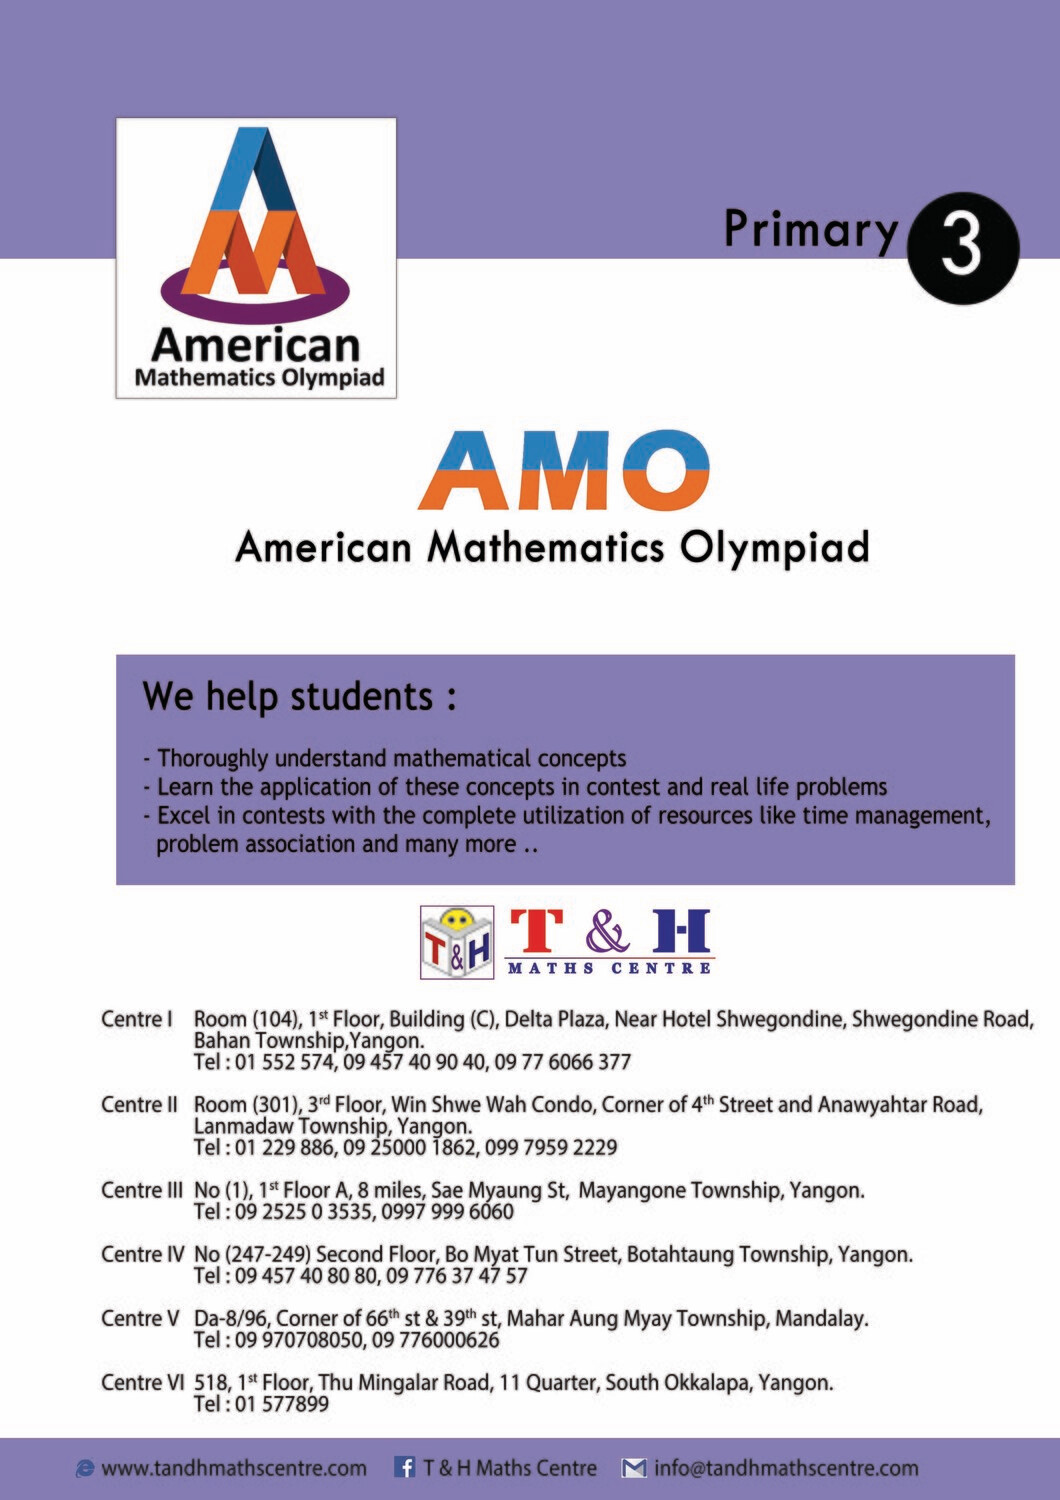 AMO - Primary 3 (2013 to 2018)